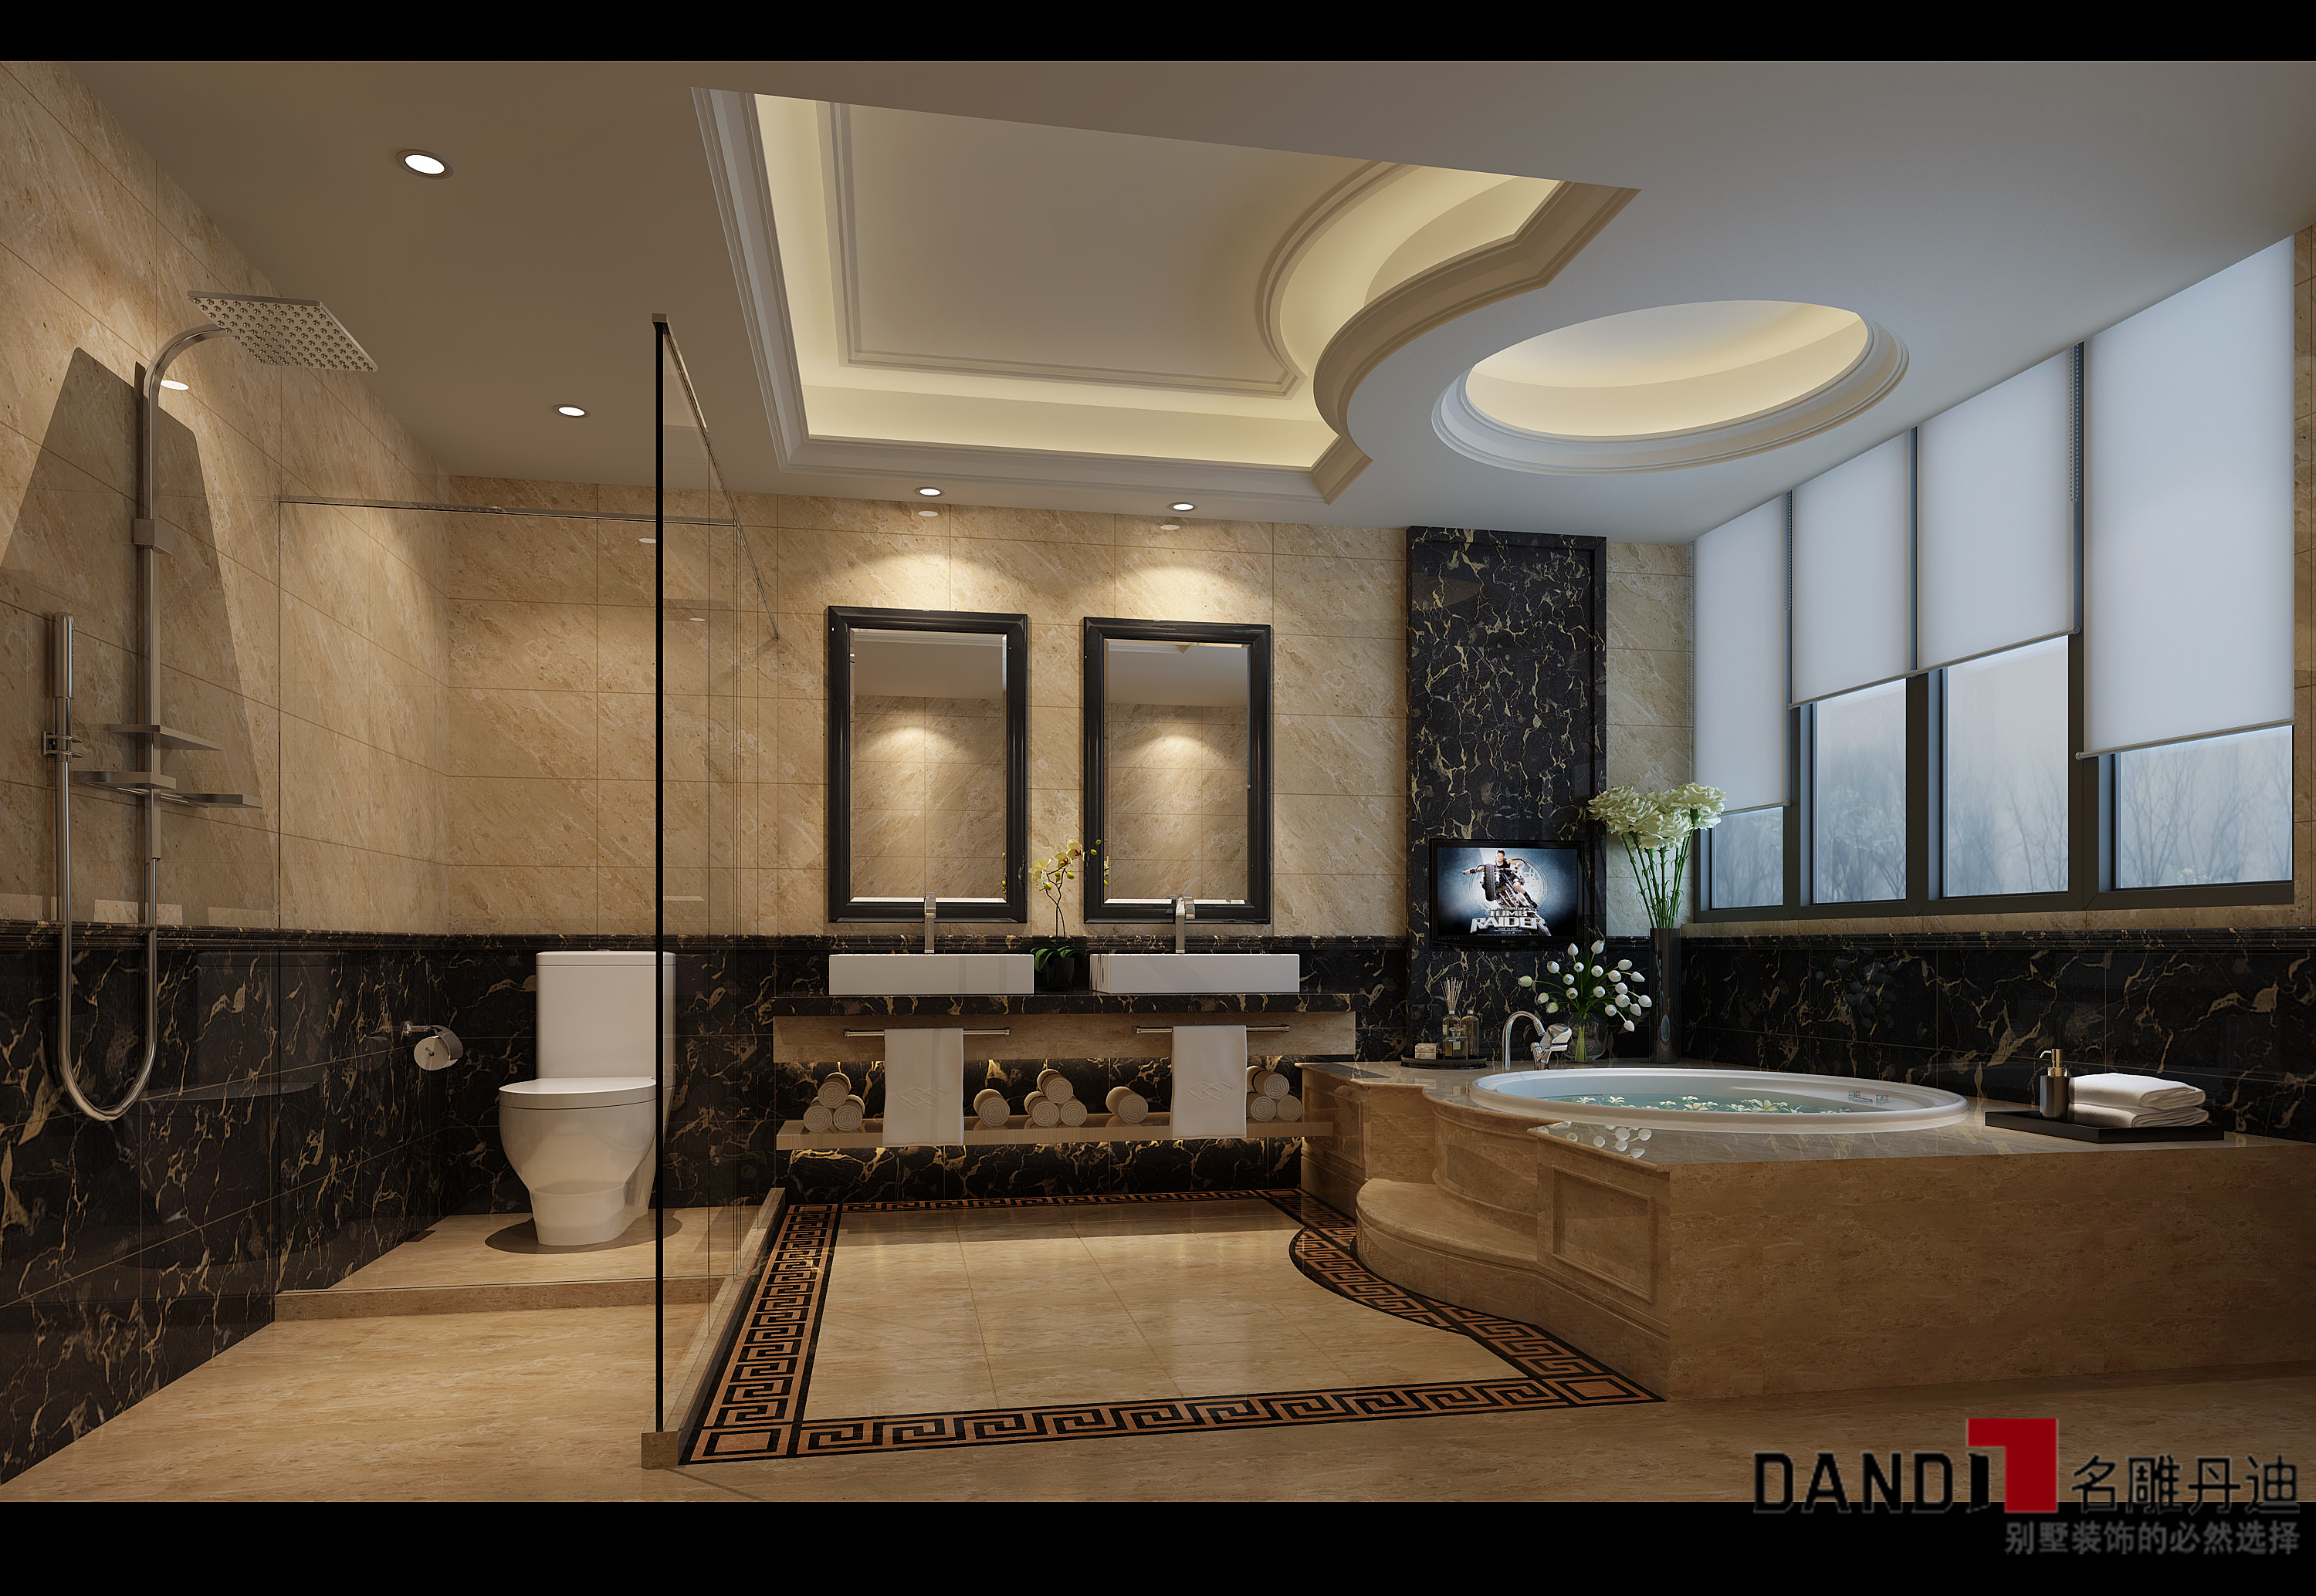 现代中式 别墅 个性温馨 浅色中式 卫生间 卫生间图片来自名雕丹迪在融会东方的分享